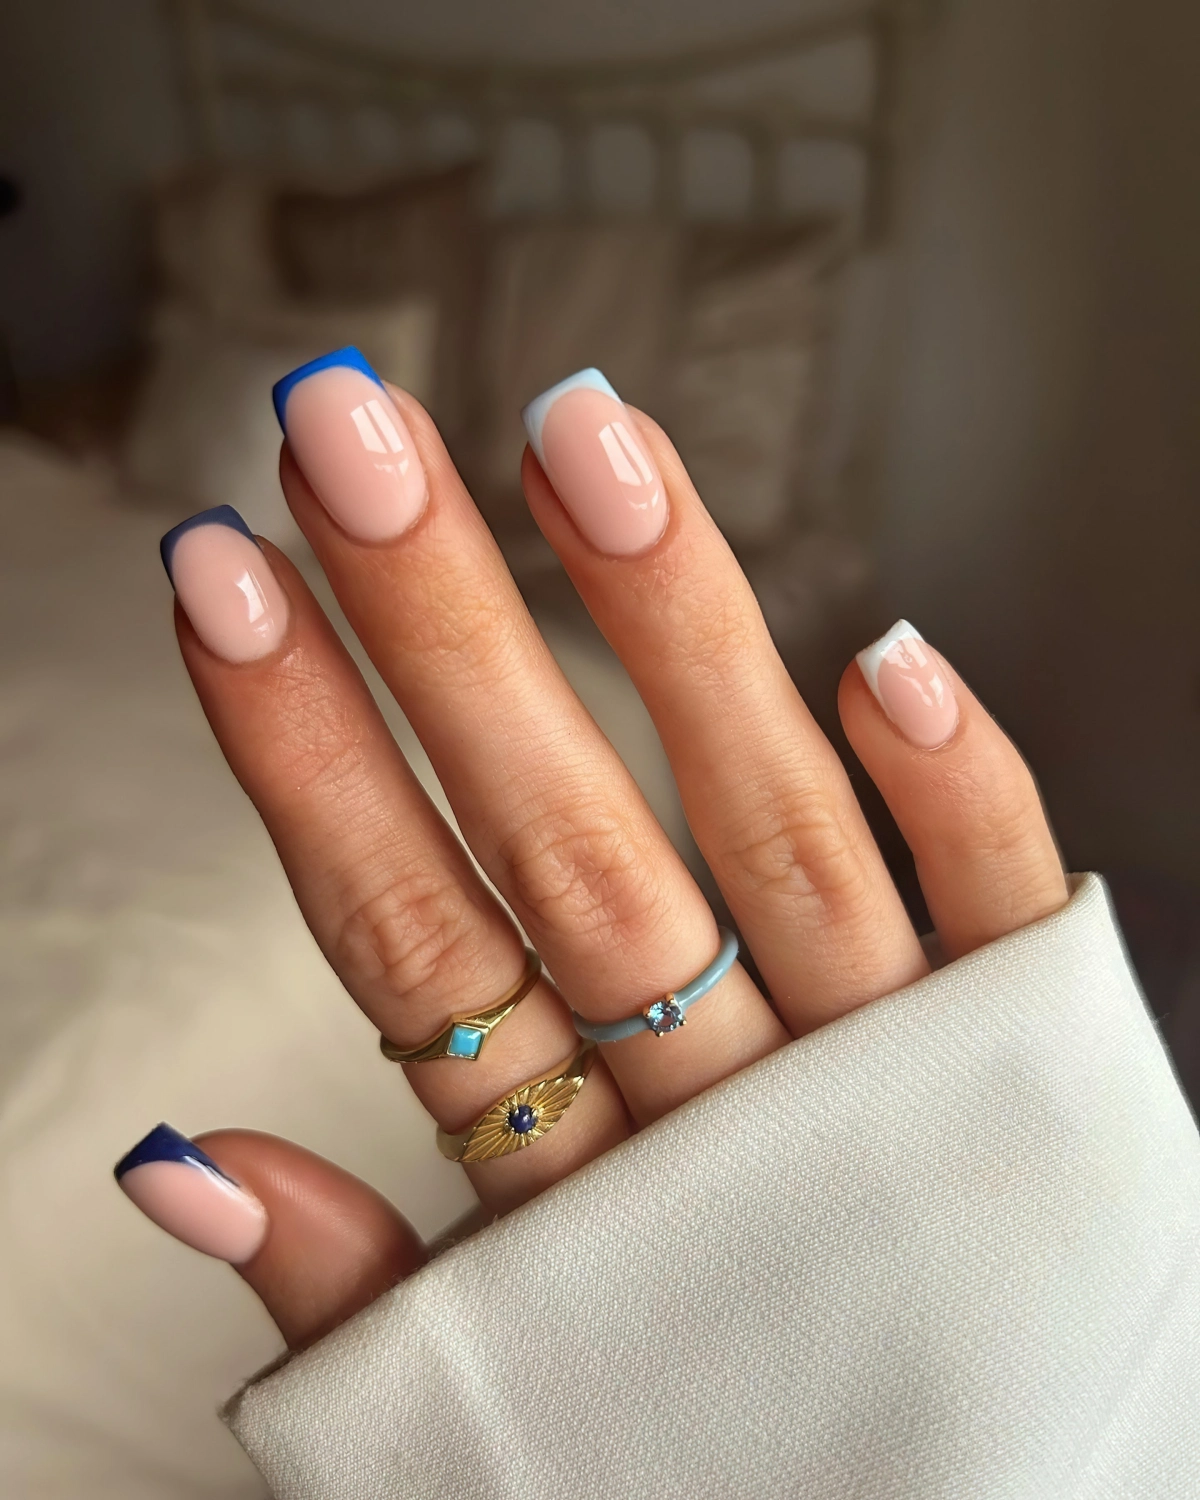 fedfrench ongles en couleurs pointes bleu vernis bijoux forme carre